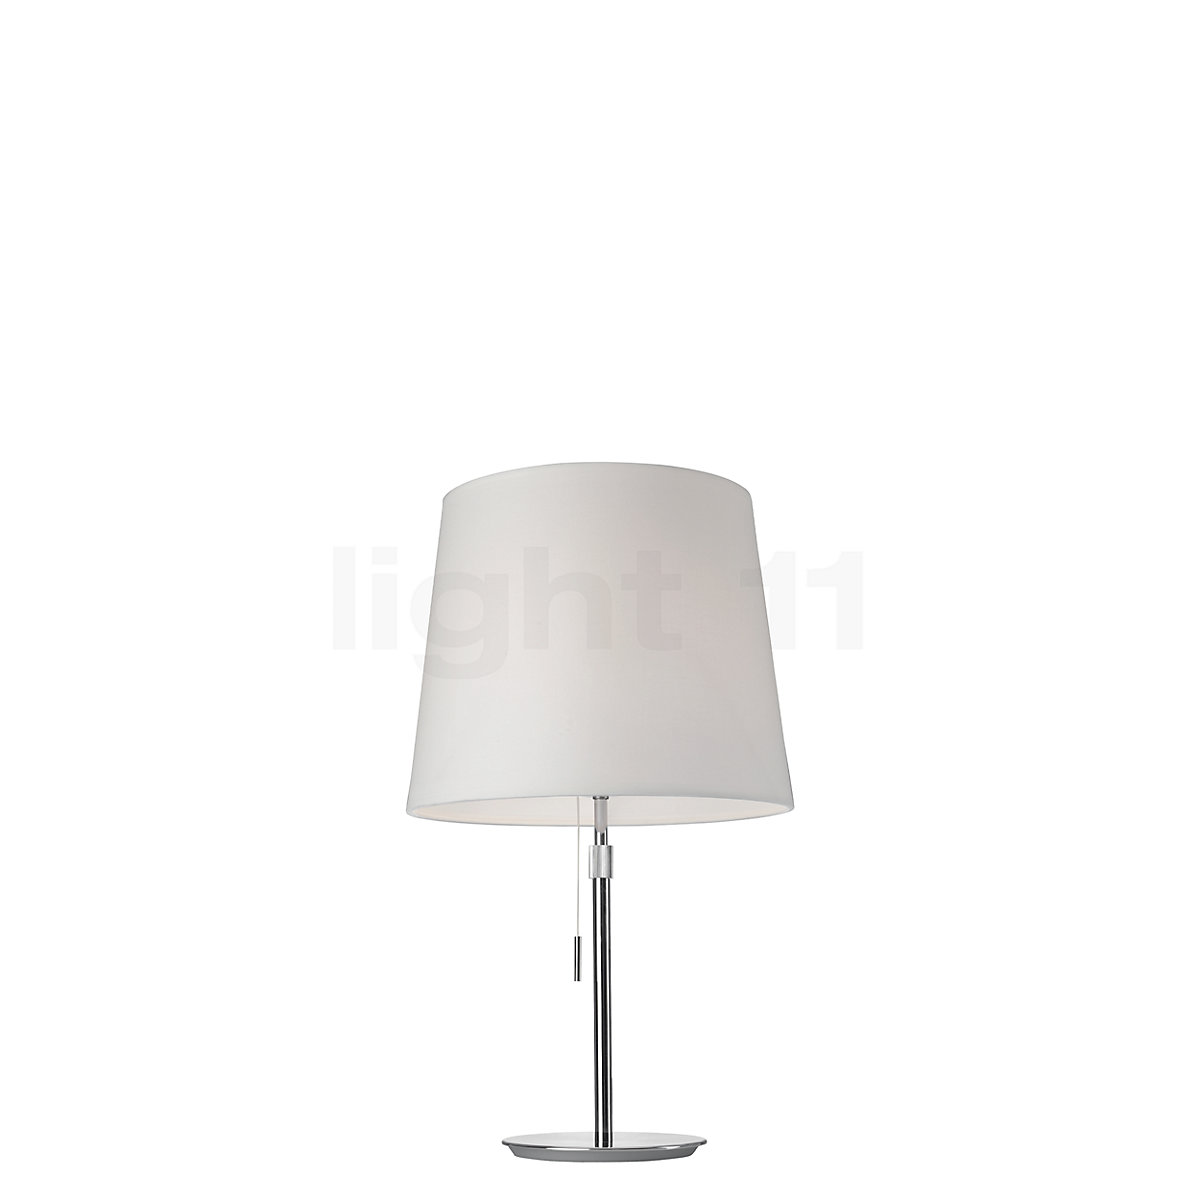 Buy Villeroy Boch Amsterdam Table Lamp At Light11 Eu